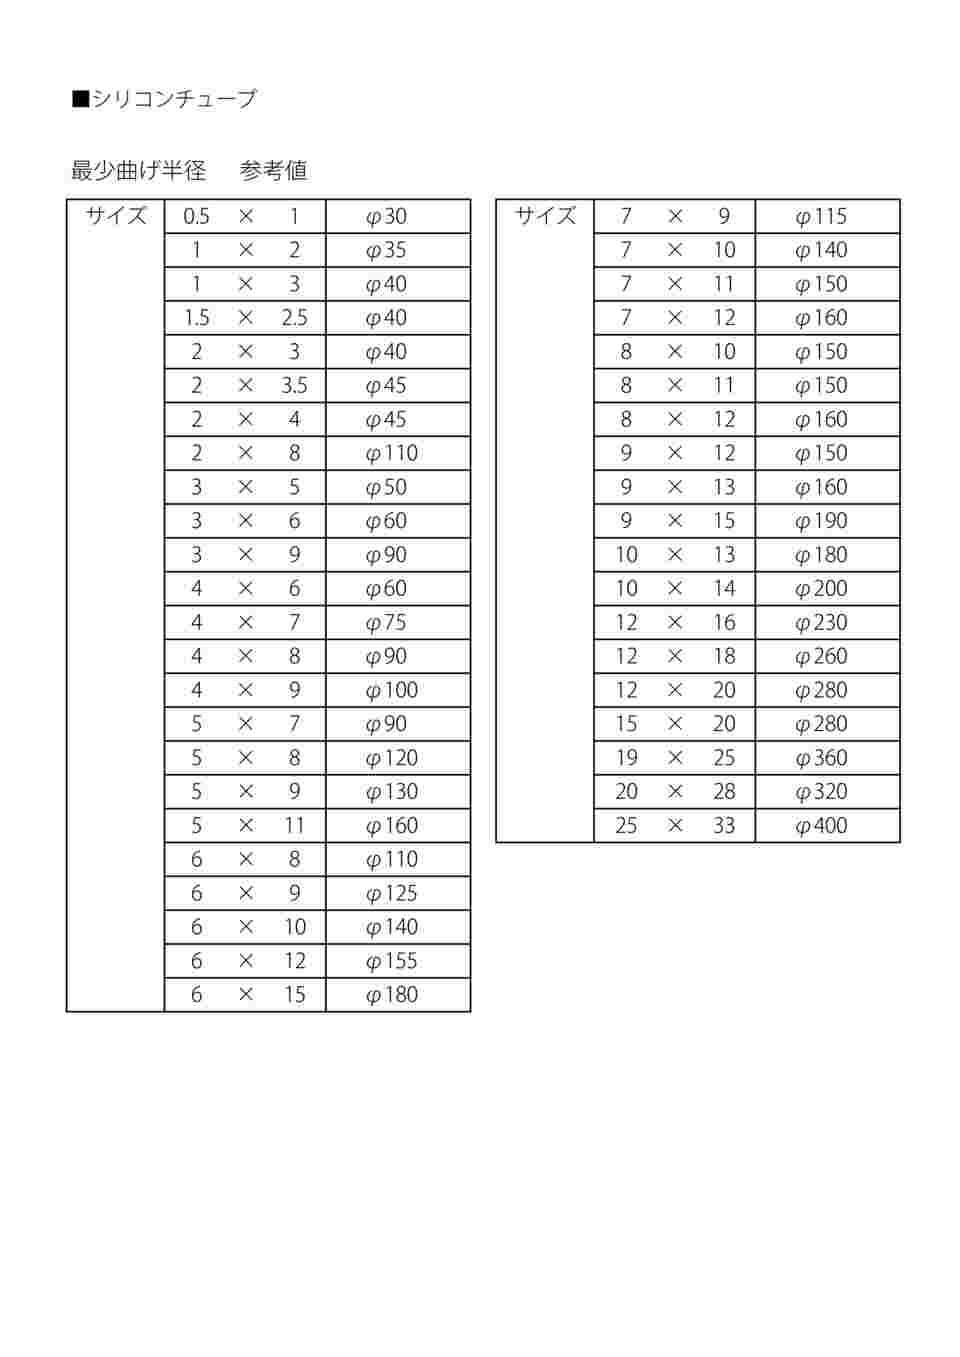 9-869-19 ラボラン(R)シリコンチューブ 8×12 1巻(11m) 【AXEL】 アズワン